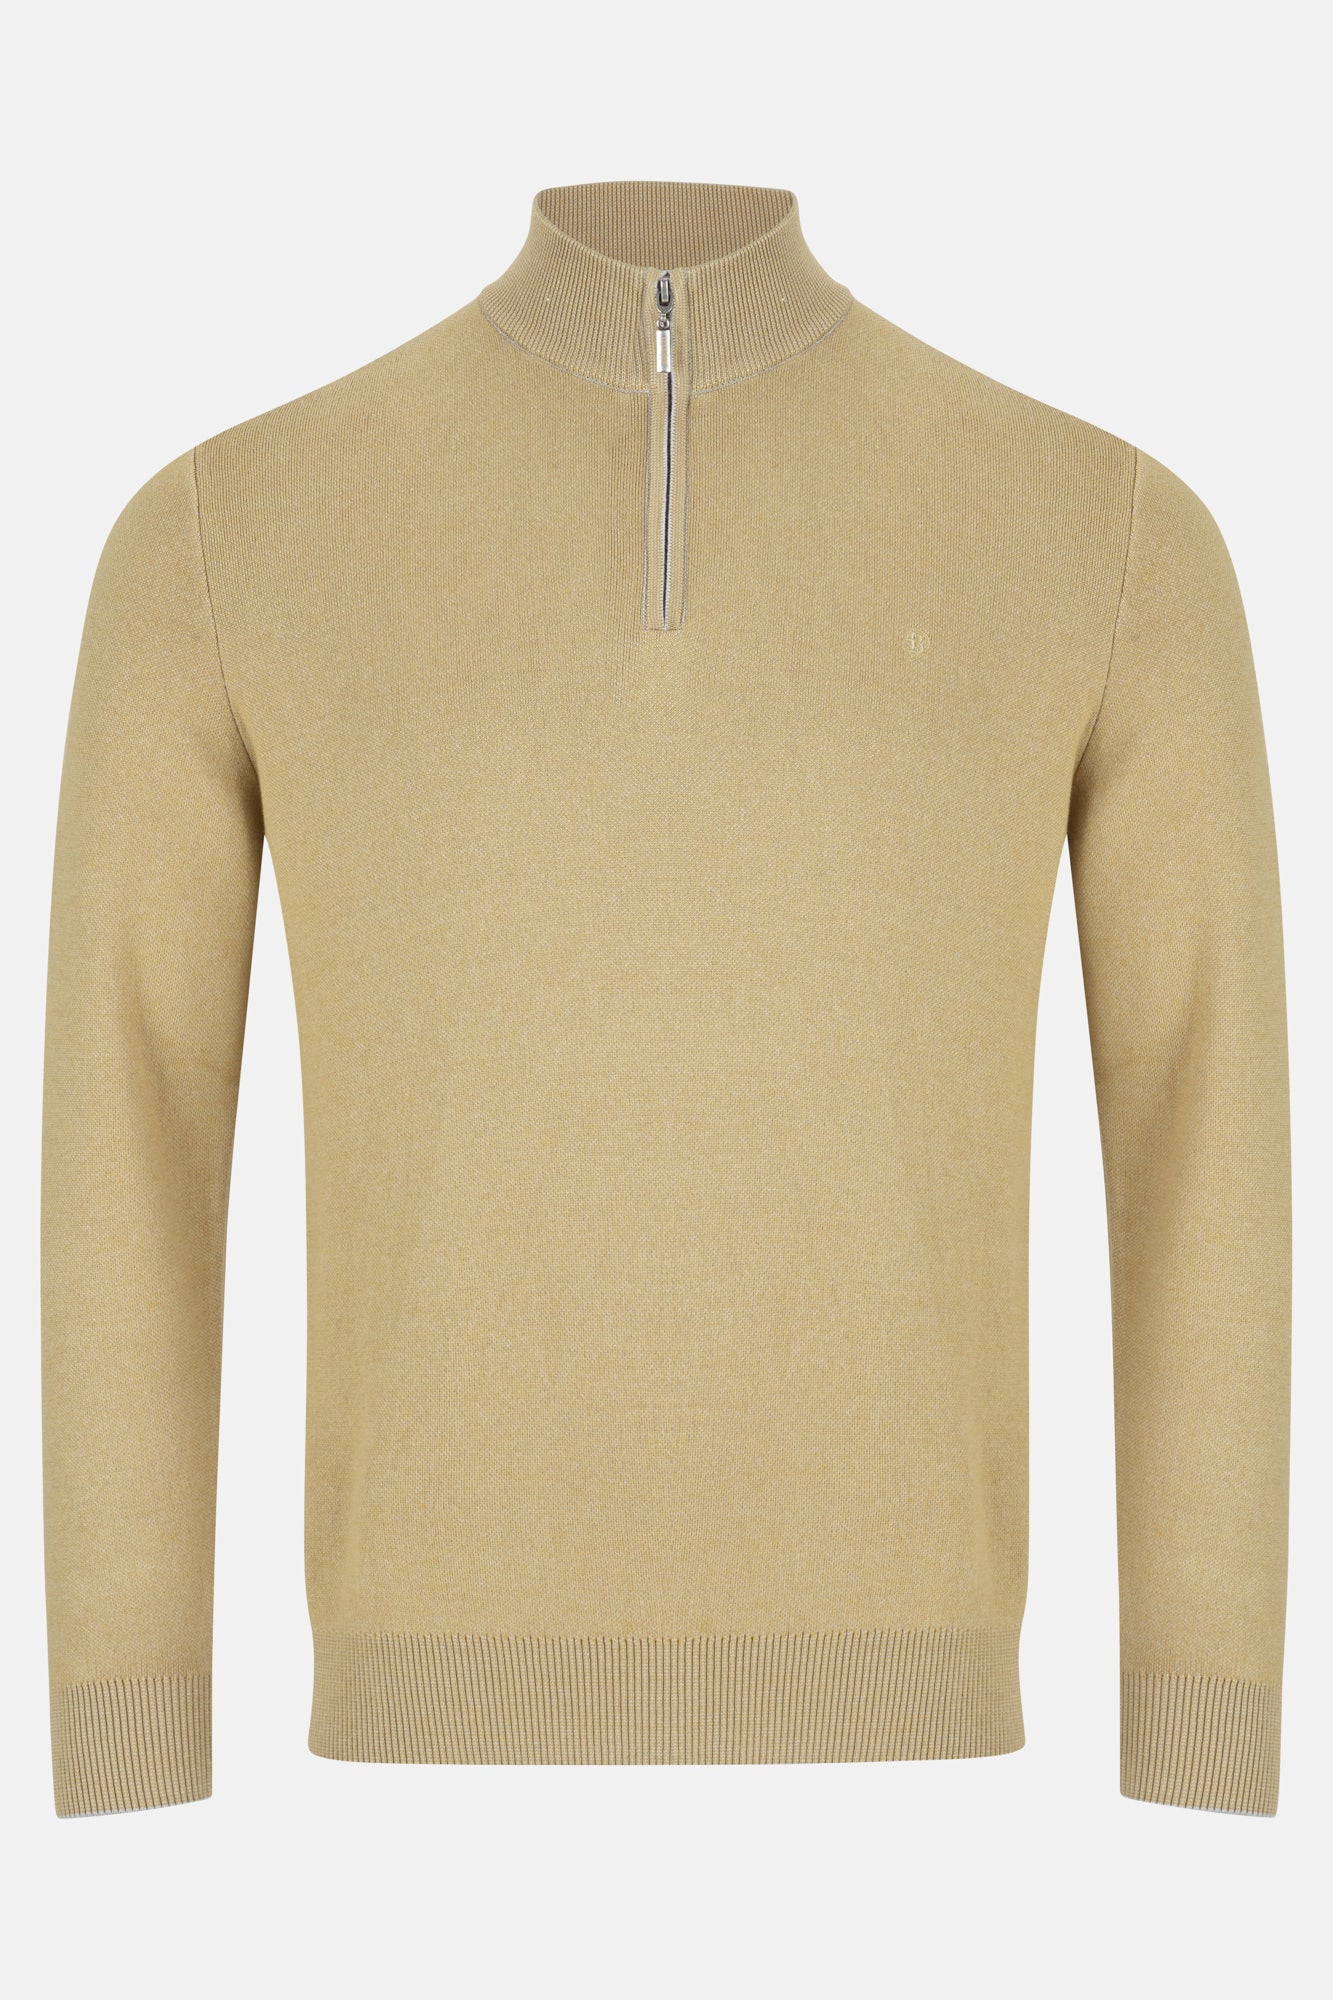 Gale Lemon Quarter Zip Sweater By Benetti Menswear 